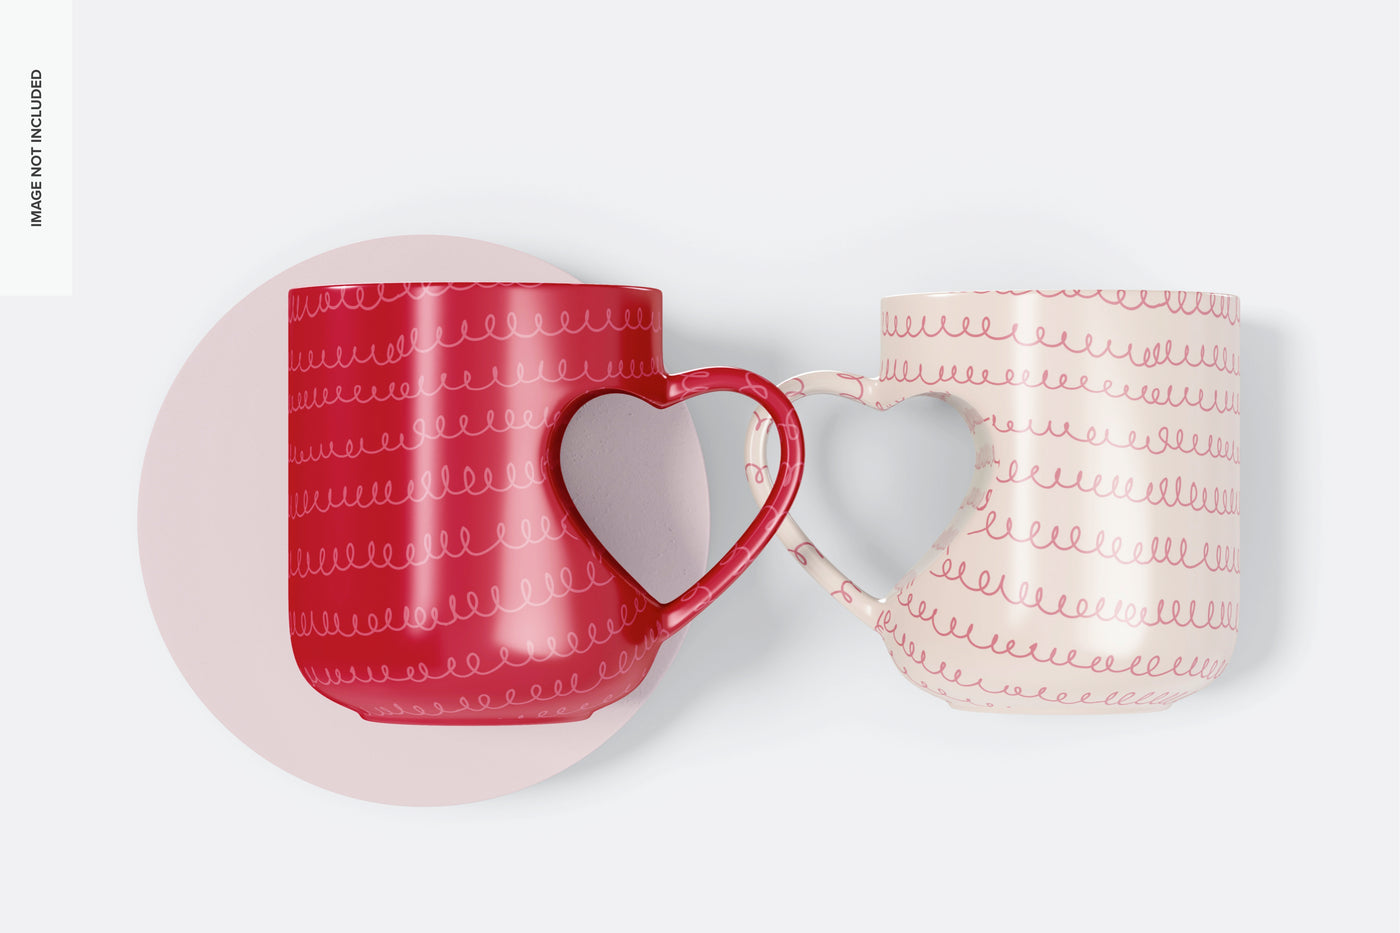 Heart Handle Mug